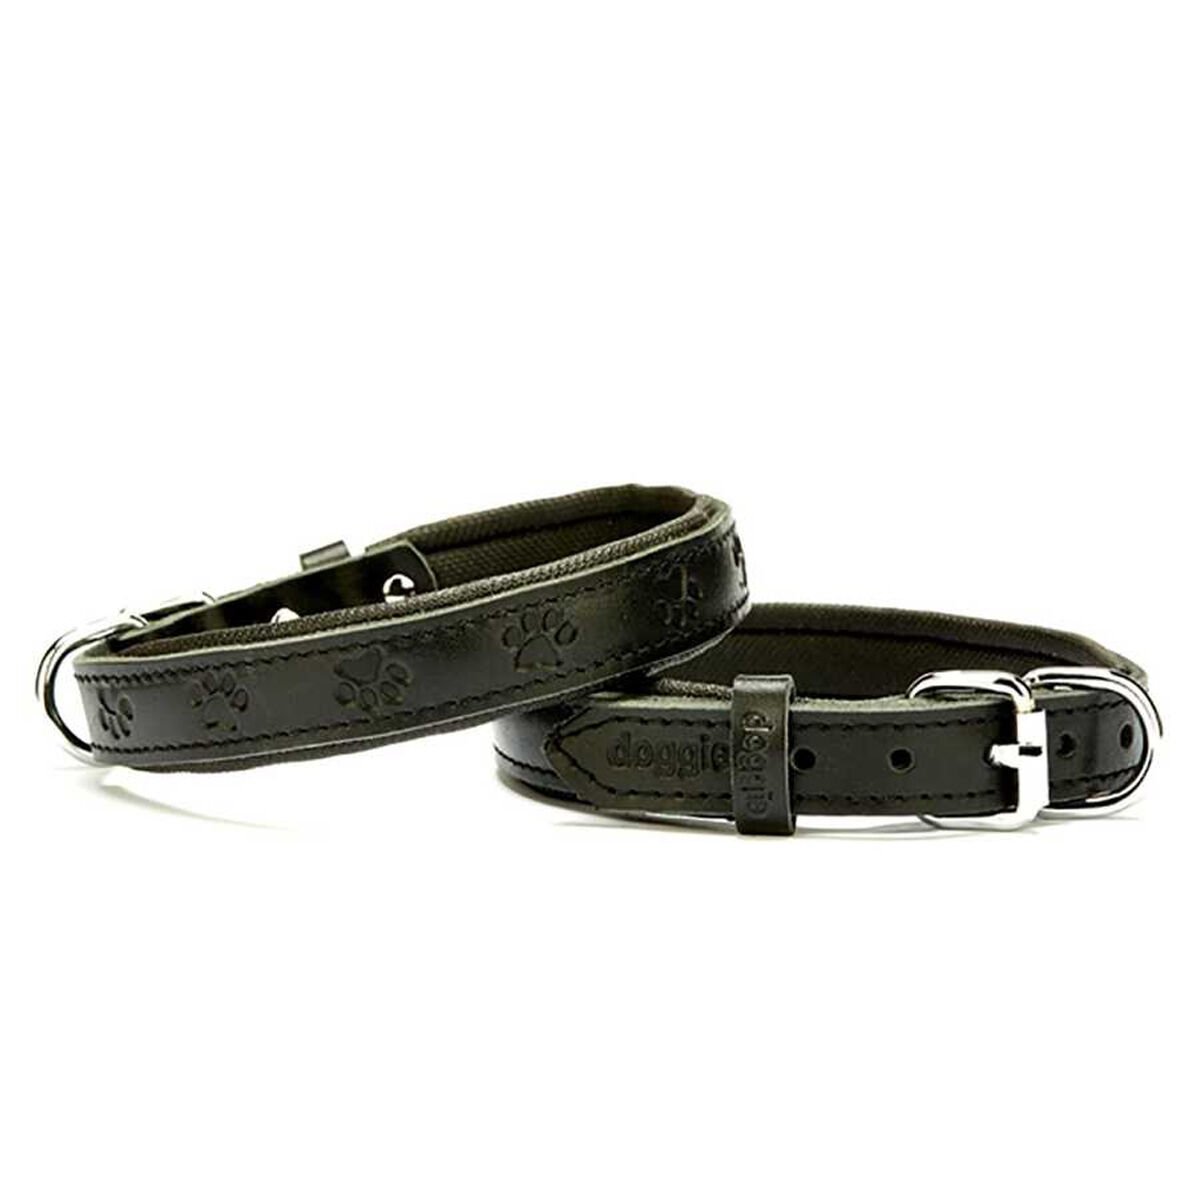 Doggie Comfort Deri Boyun Tasması Siyah 1,5 x 25-30 cm Medium